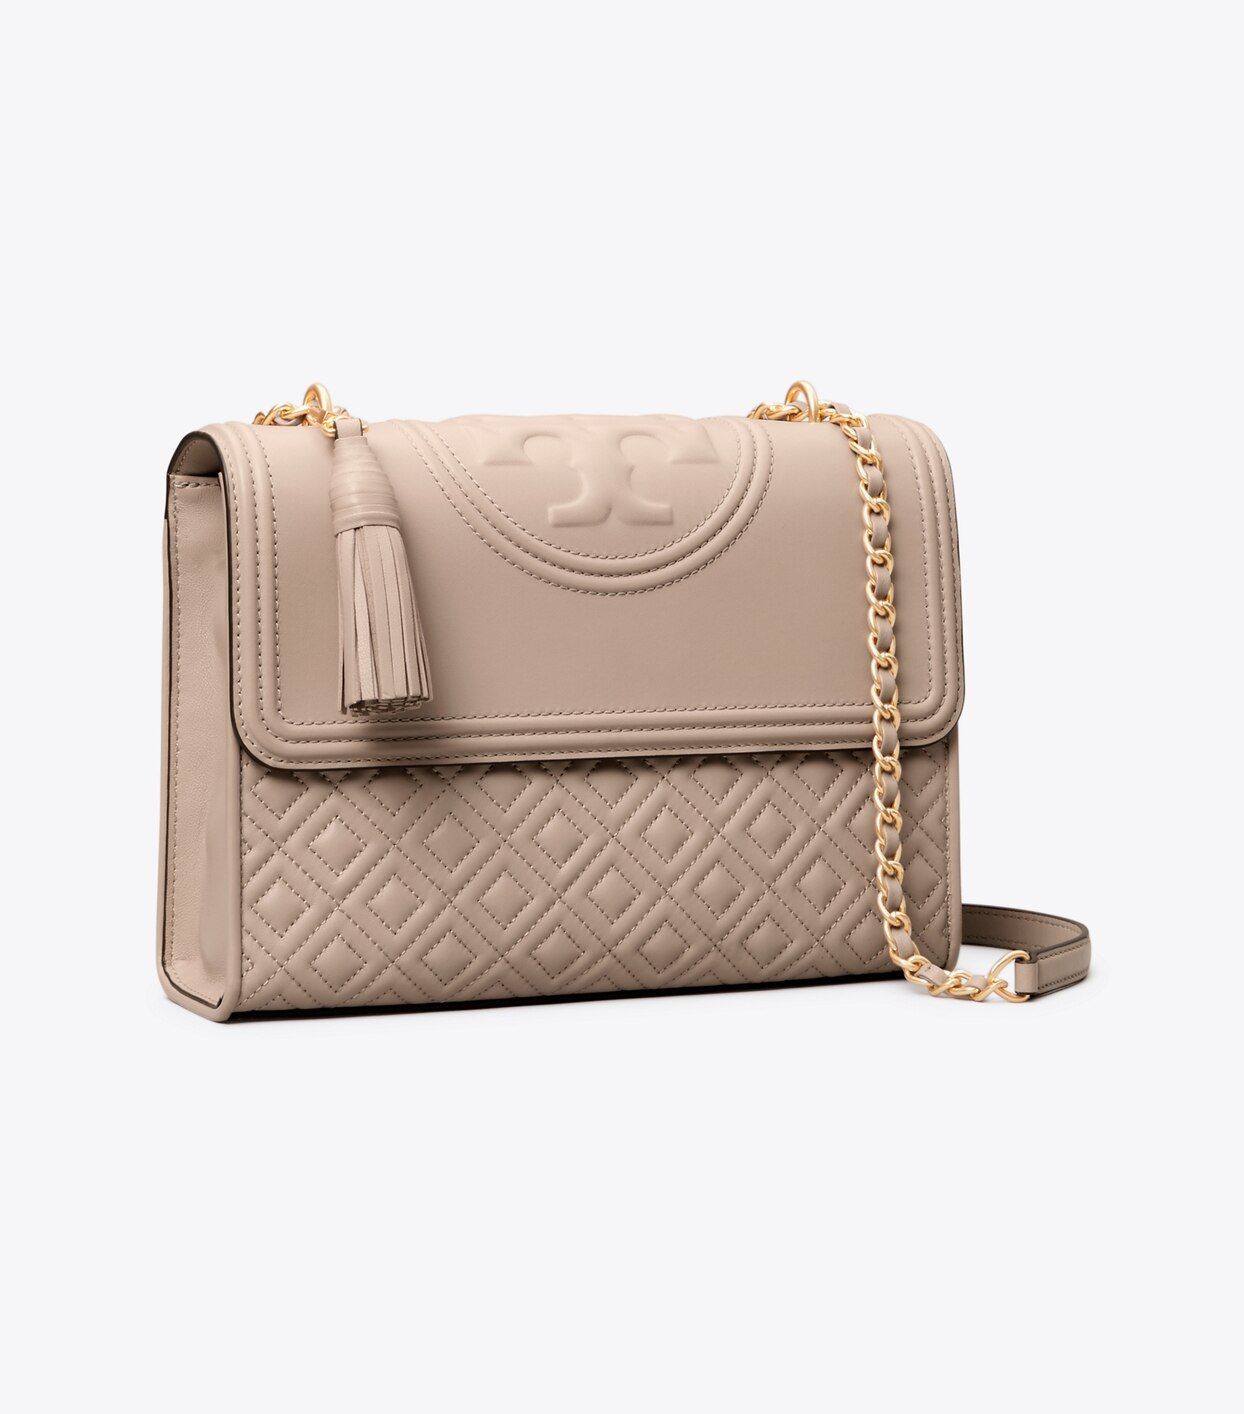 Tory Burch Fleming Convertible Shoulder Bag: Women's Handbags | Tory Burch (US)